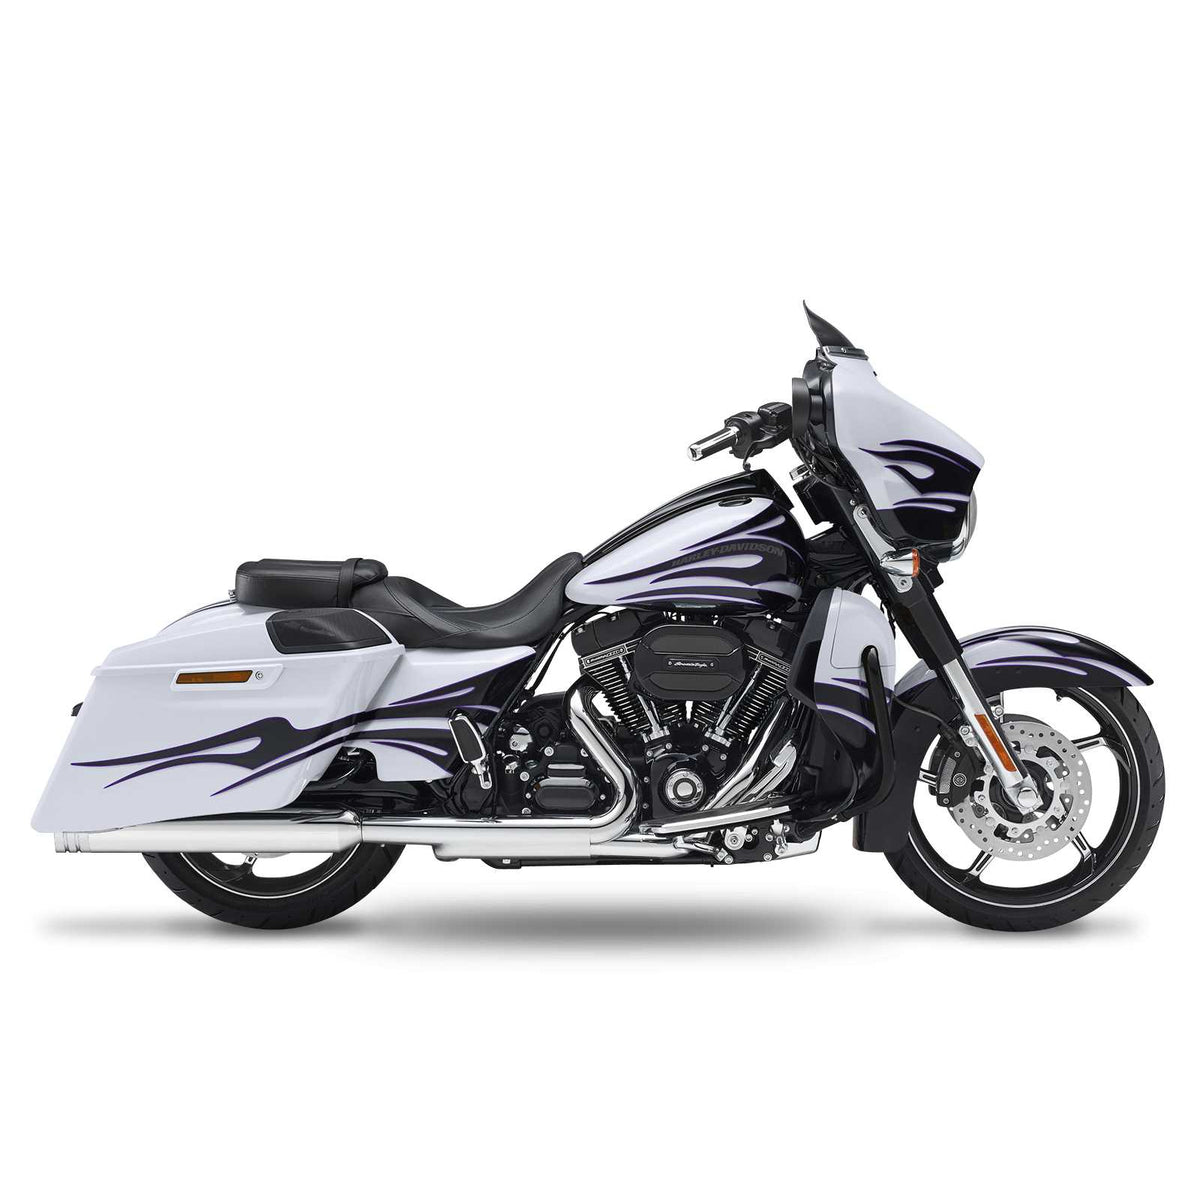 Кesstech 2018 Harley-Davidson Road Glide Special Slipons adjustable